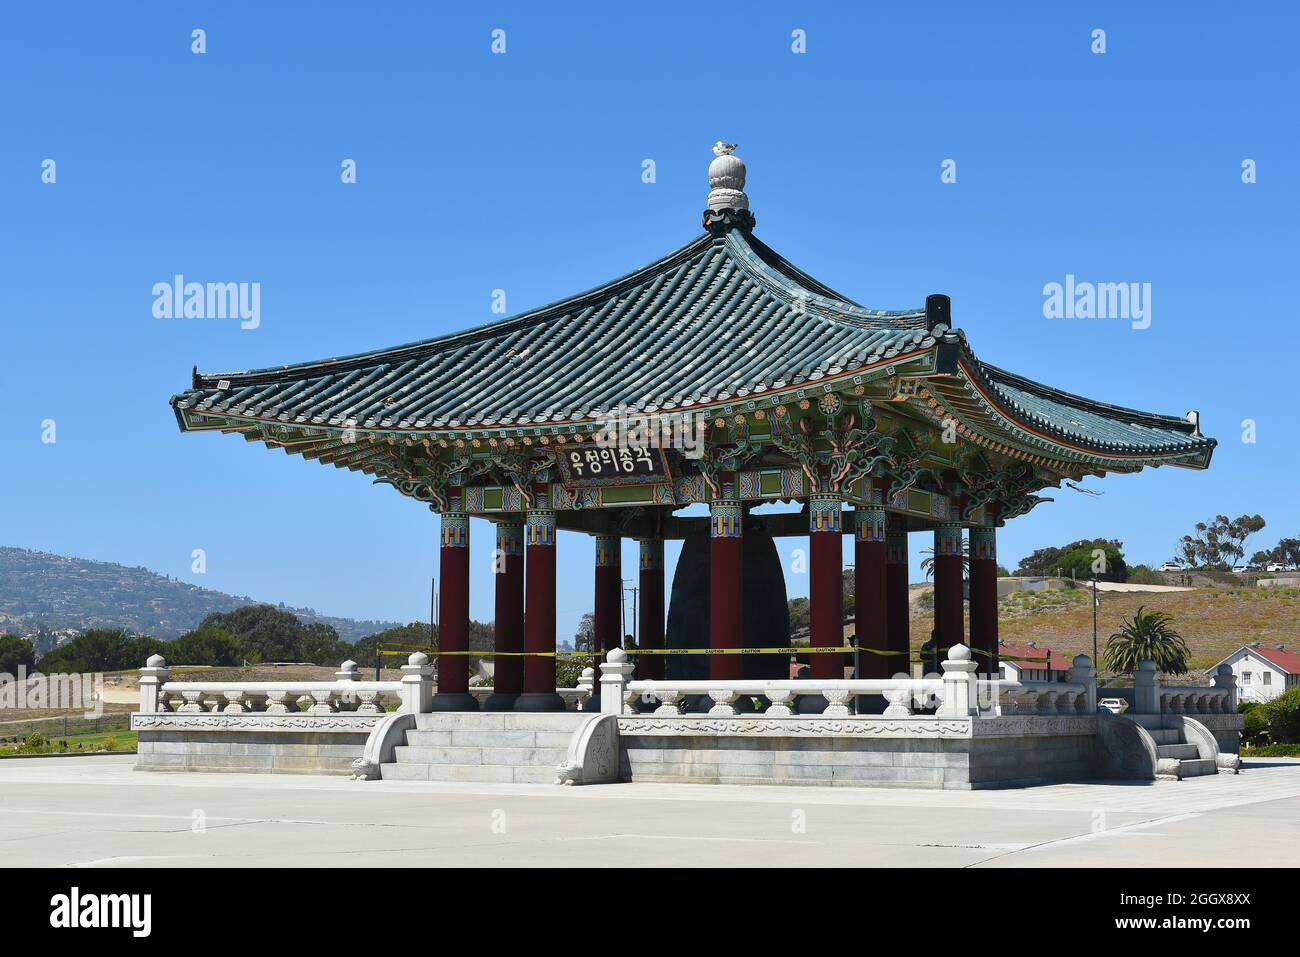 SAN PEDRO, CALIFORNIA - 27 AGO 2021: La storica campana dell'amicizia coreana in Angels Gate Park. Foto Stock